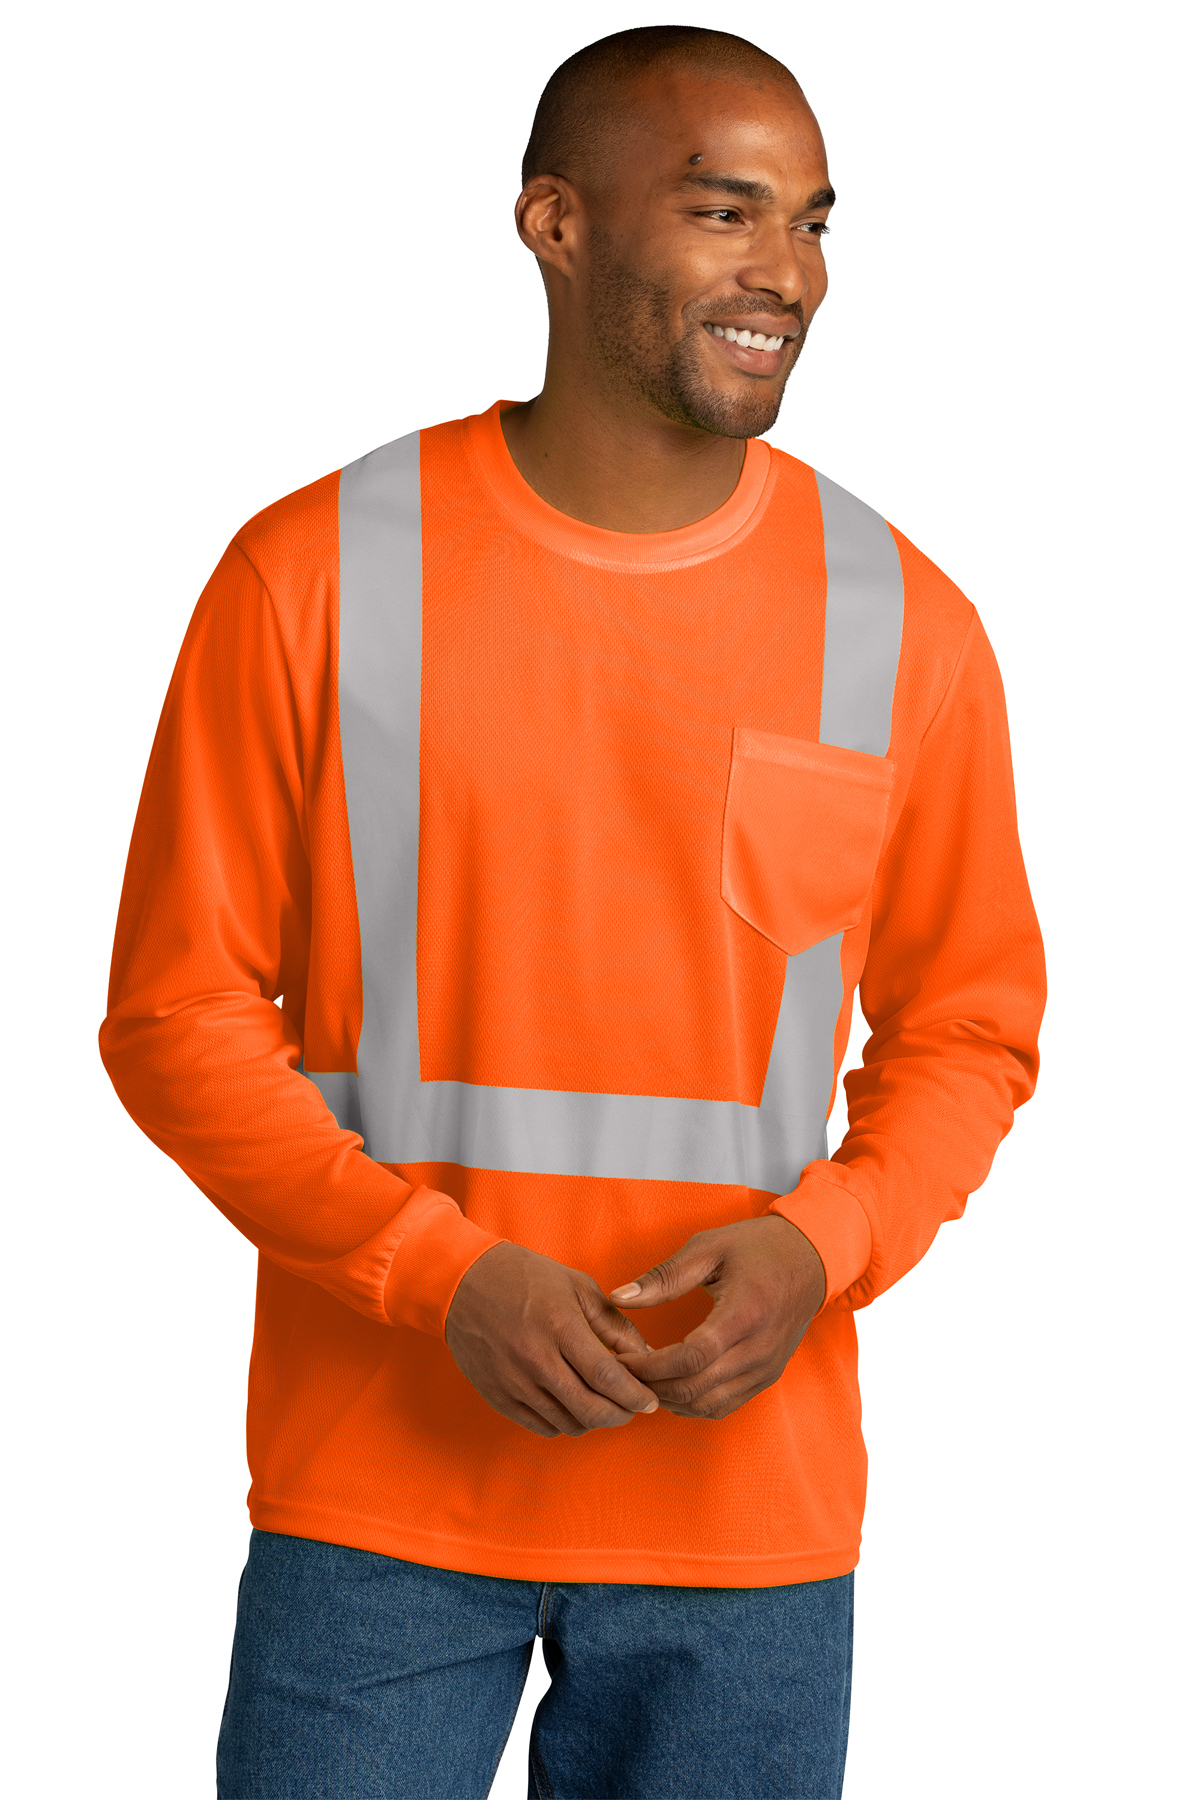 Cornerstone Safety Orange